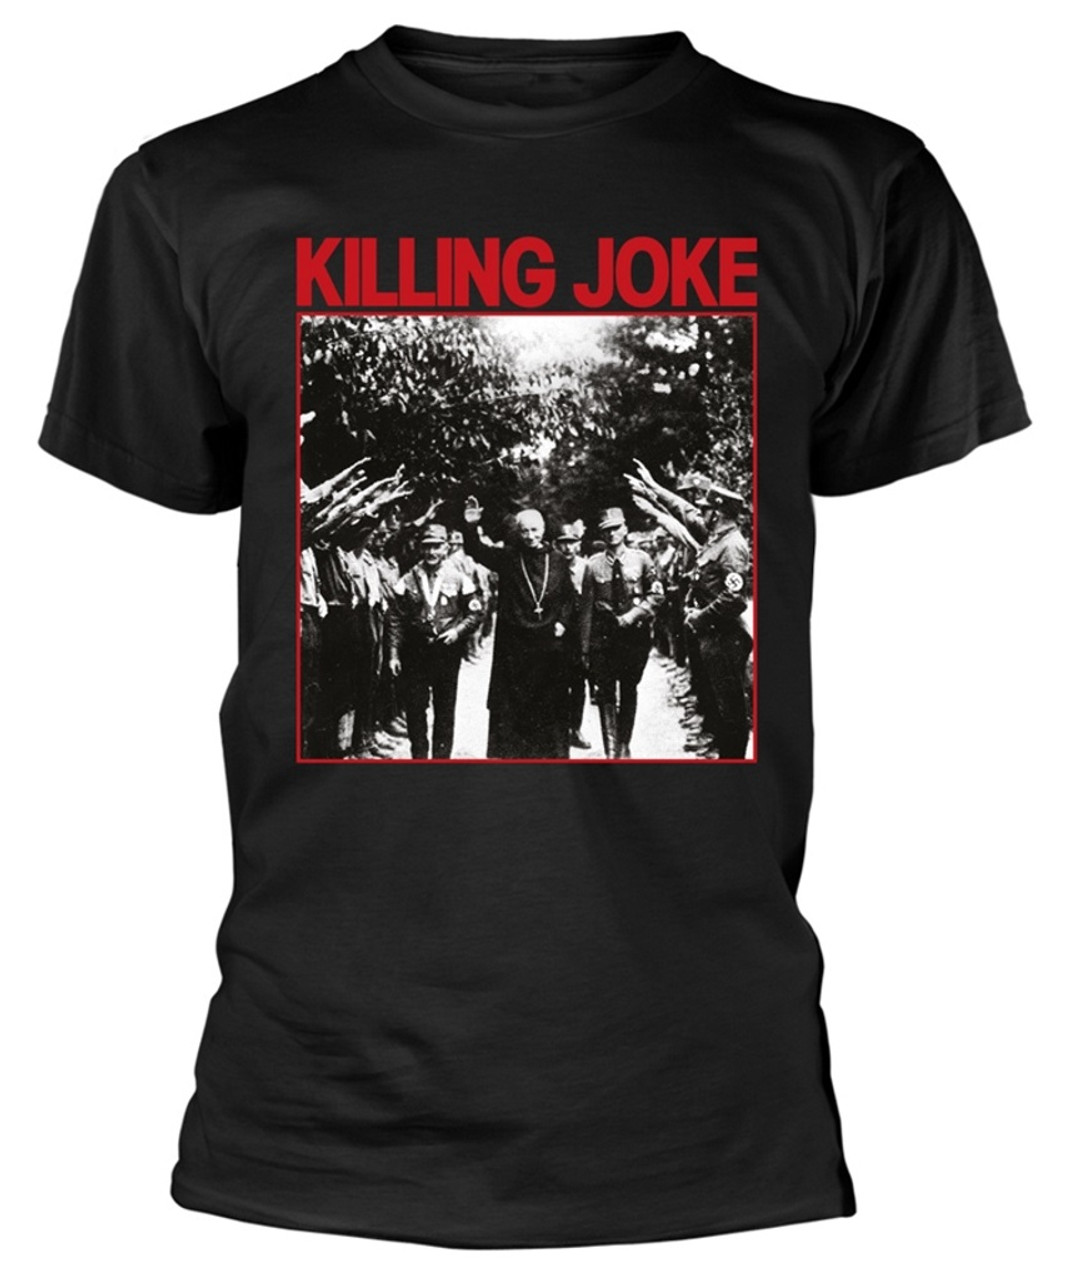 Killing Joke 'Pope' (Black) T-Shirt